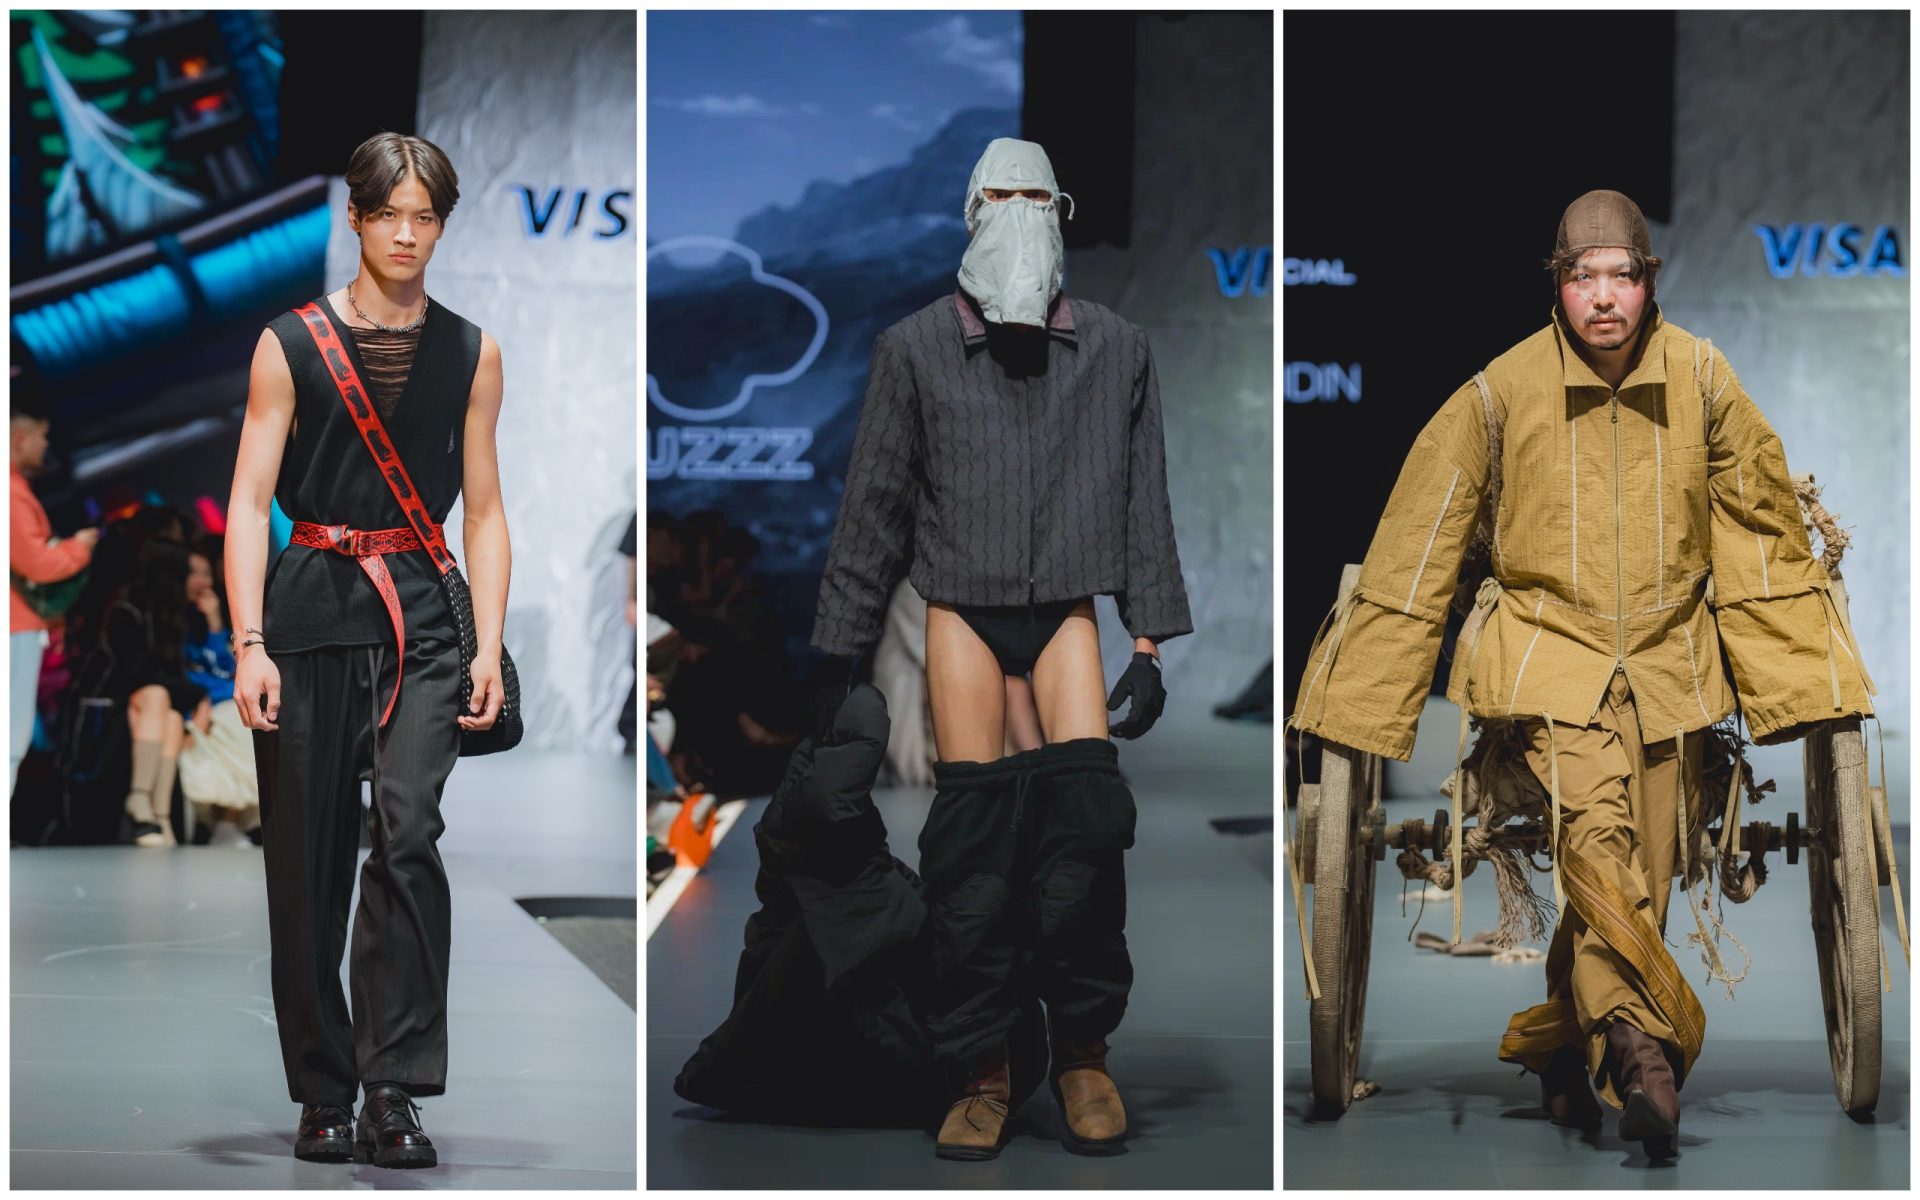 Три показа Visa Fashion Week, которые нас впечатлили